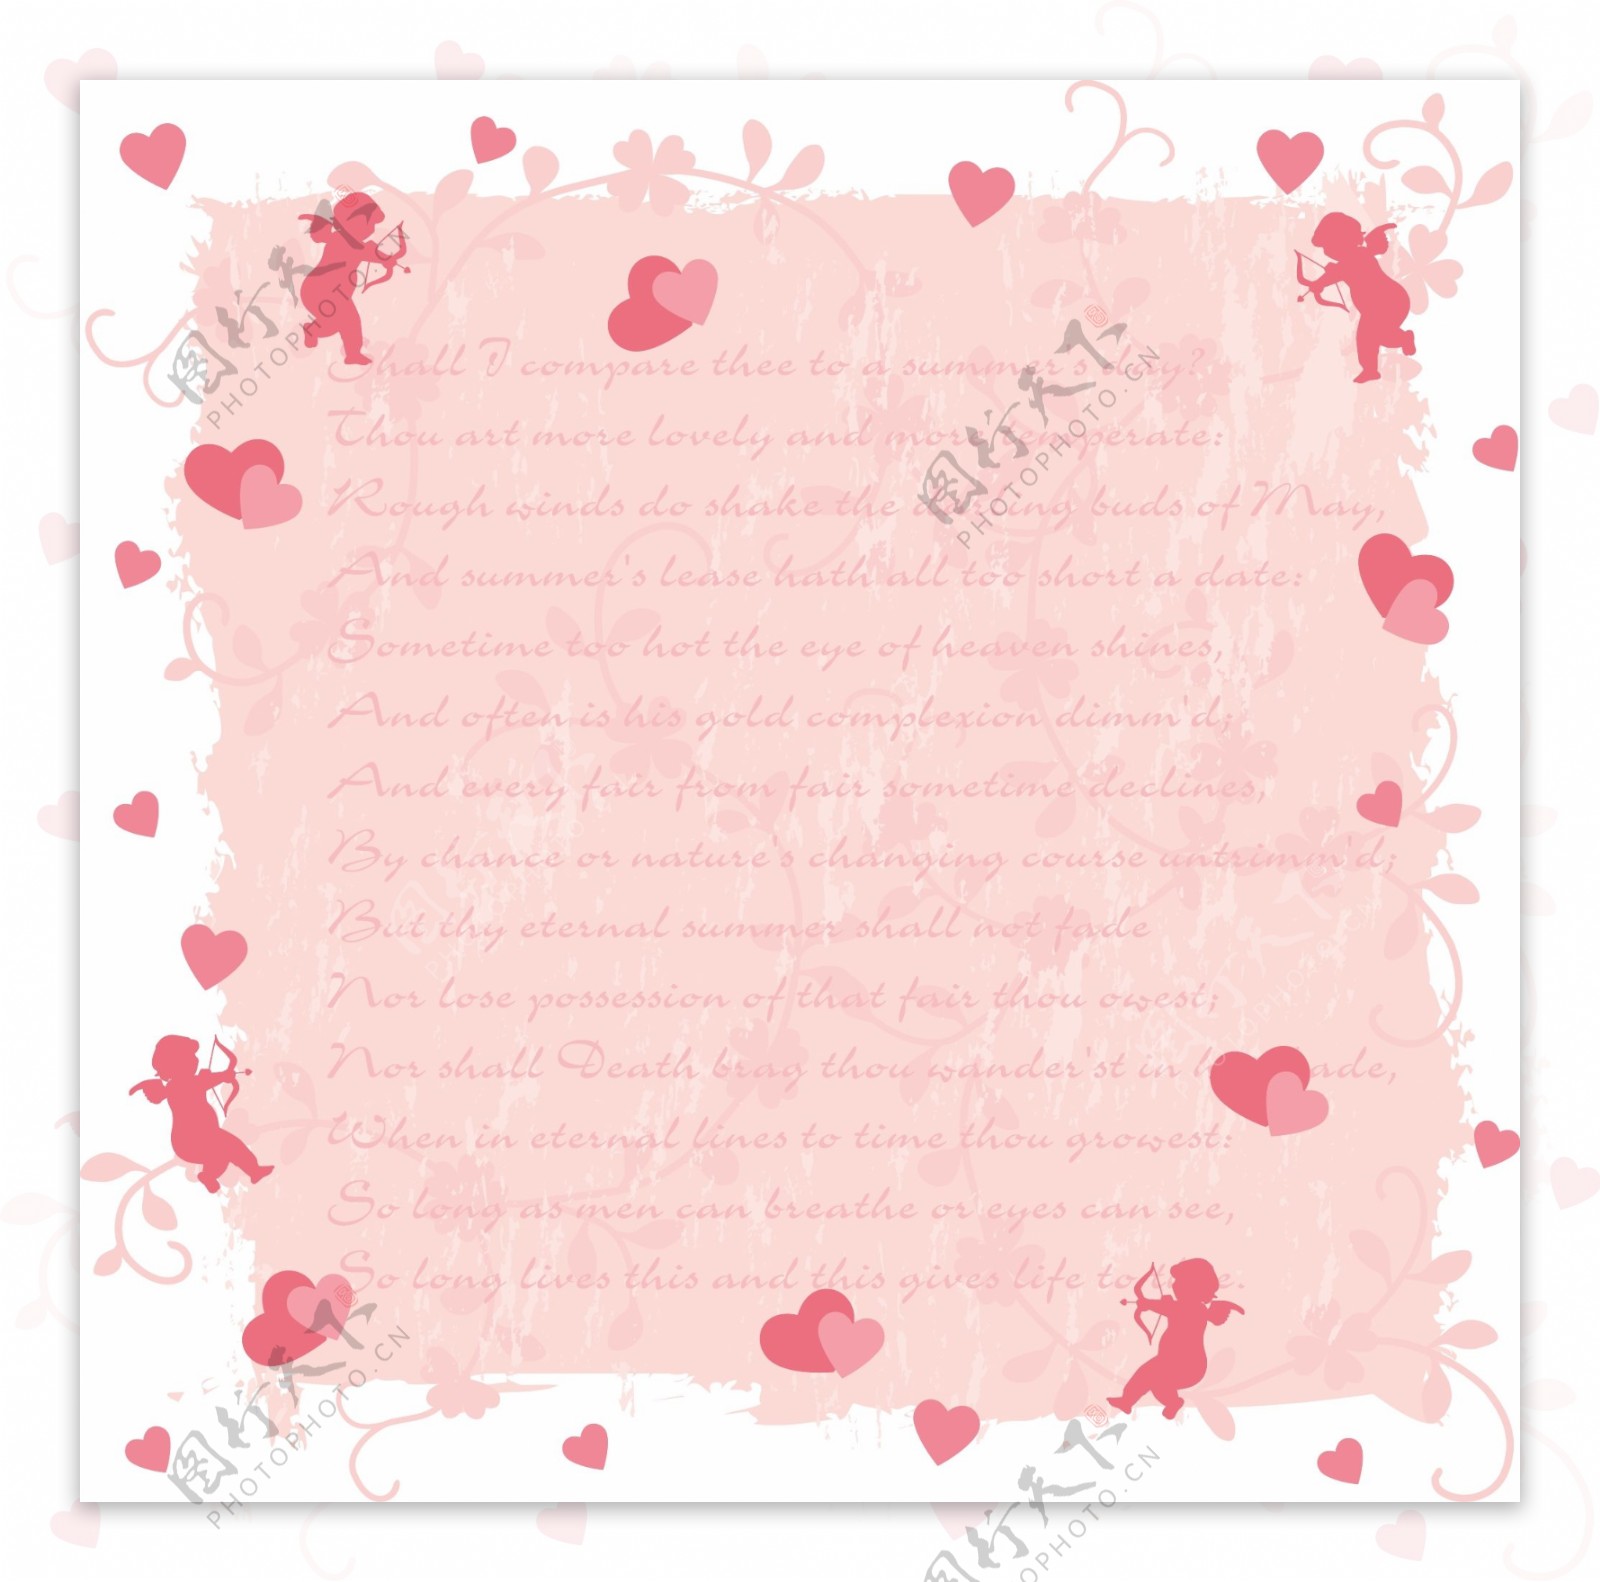 粉色信纸心形爱情元素矢量素材